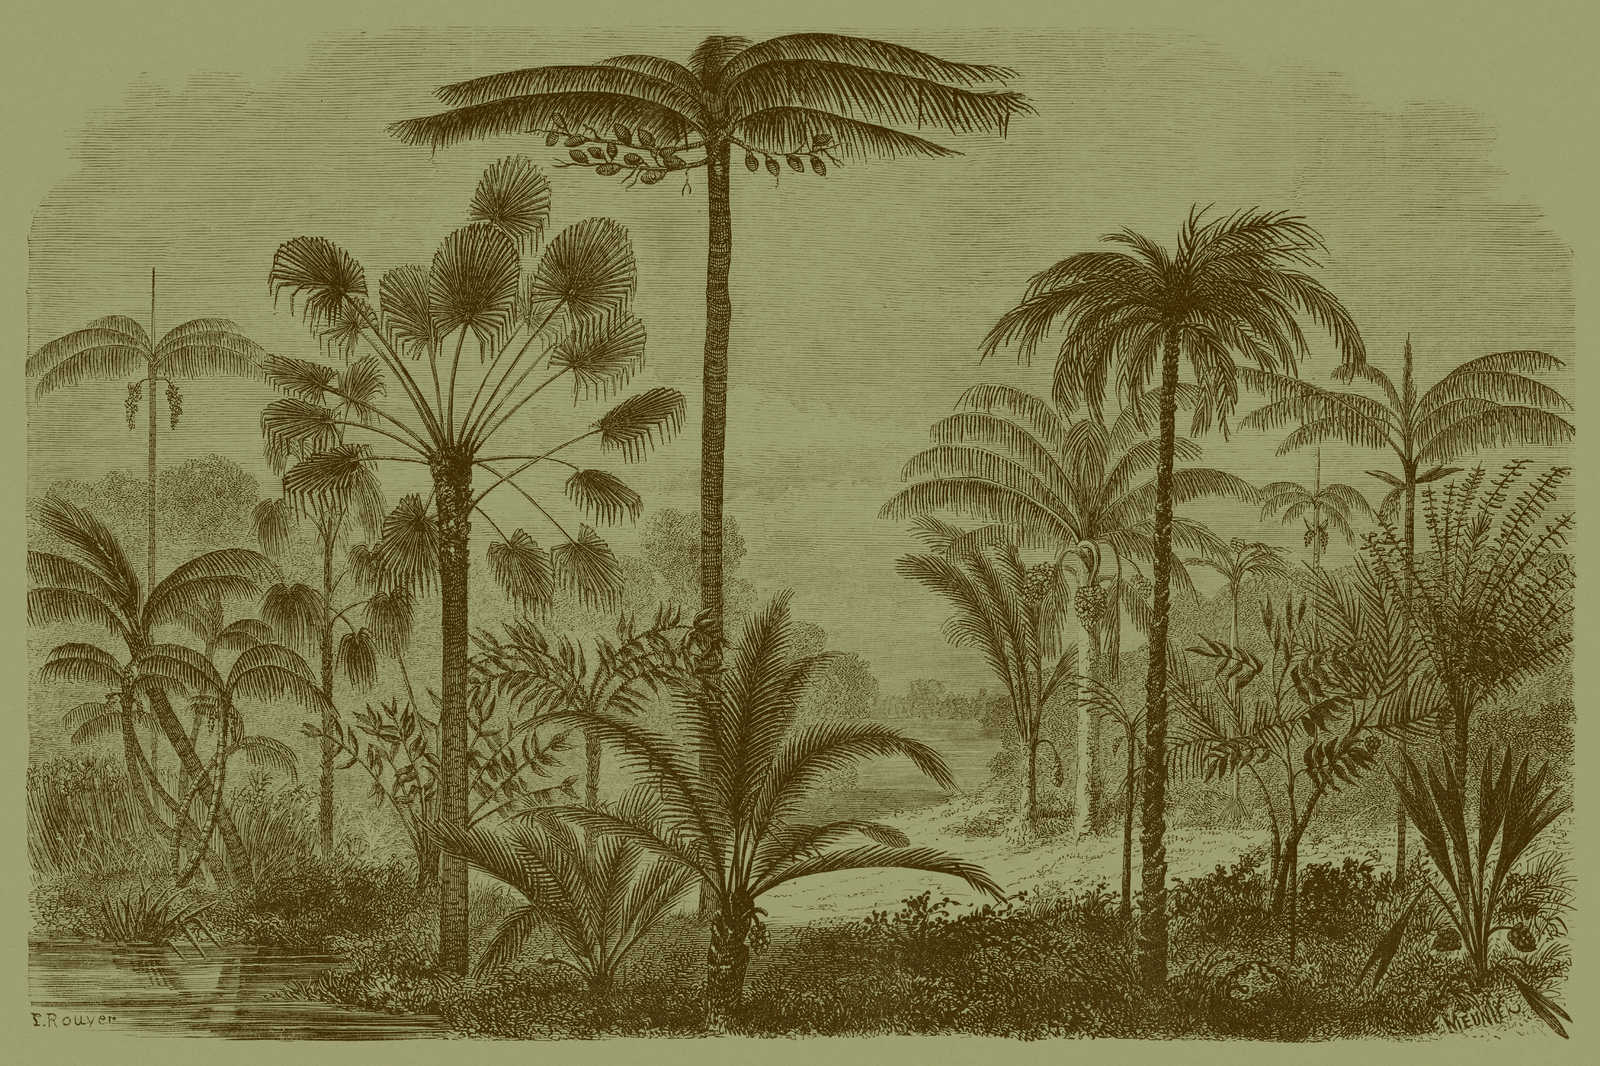             Jurassic 1 - Toile motif jungle gravure sur cuivre - 0,90 m x 0,60 m
        